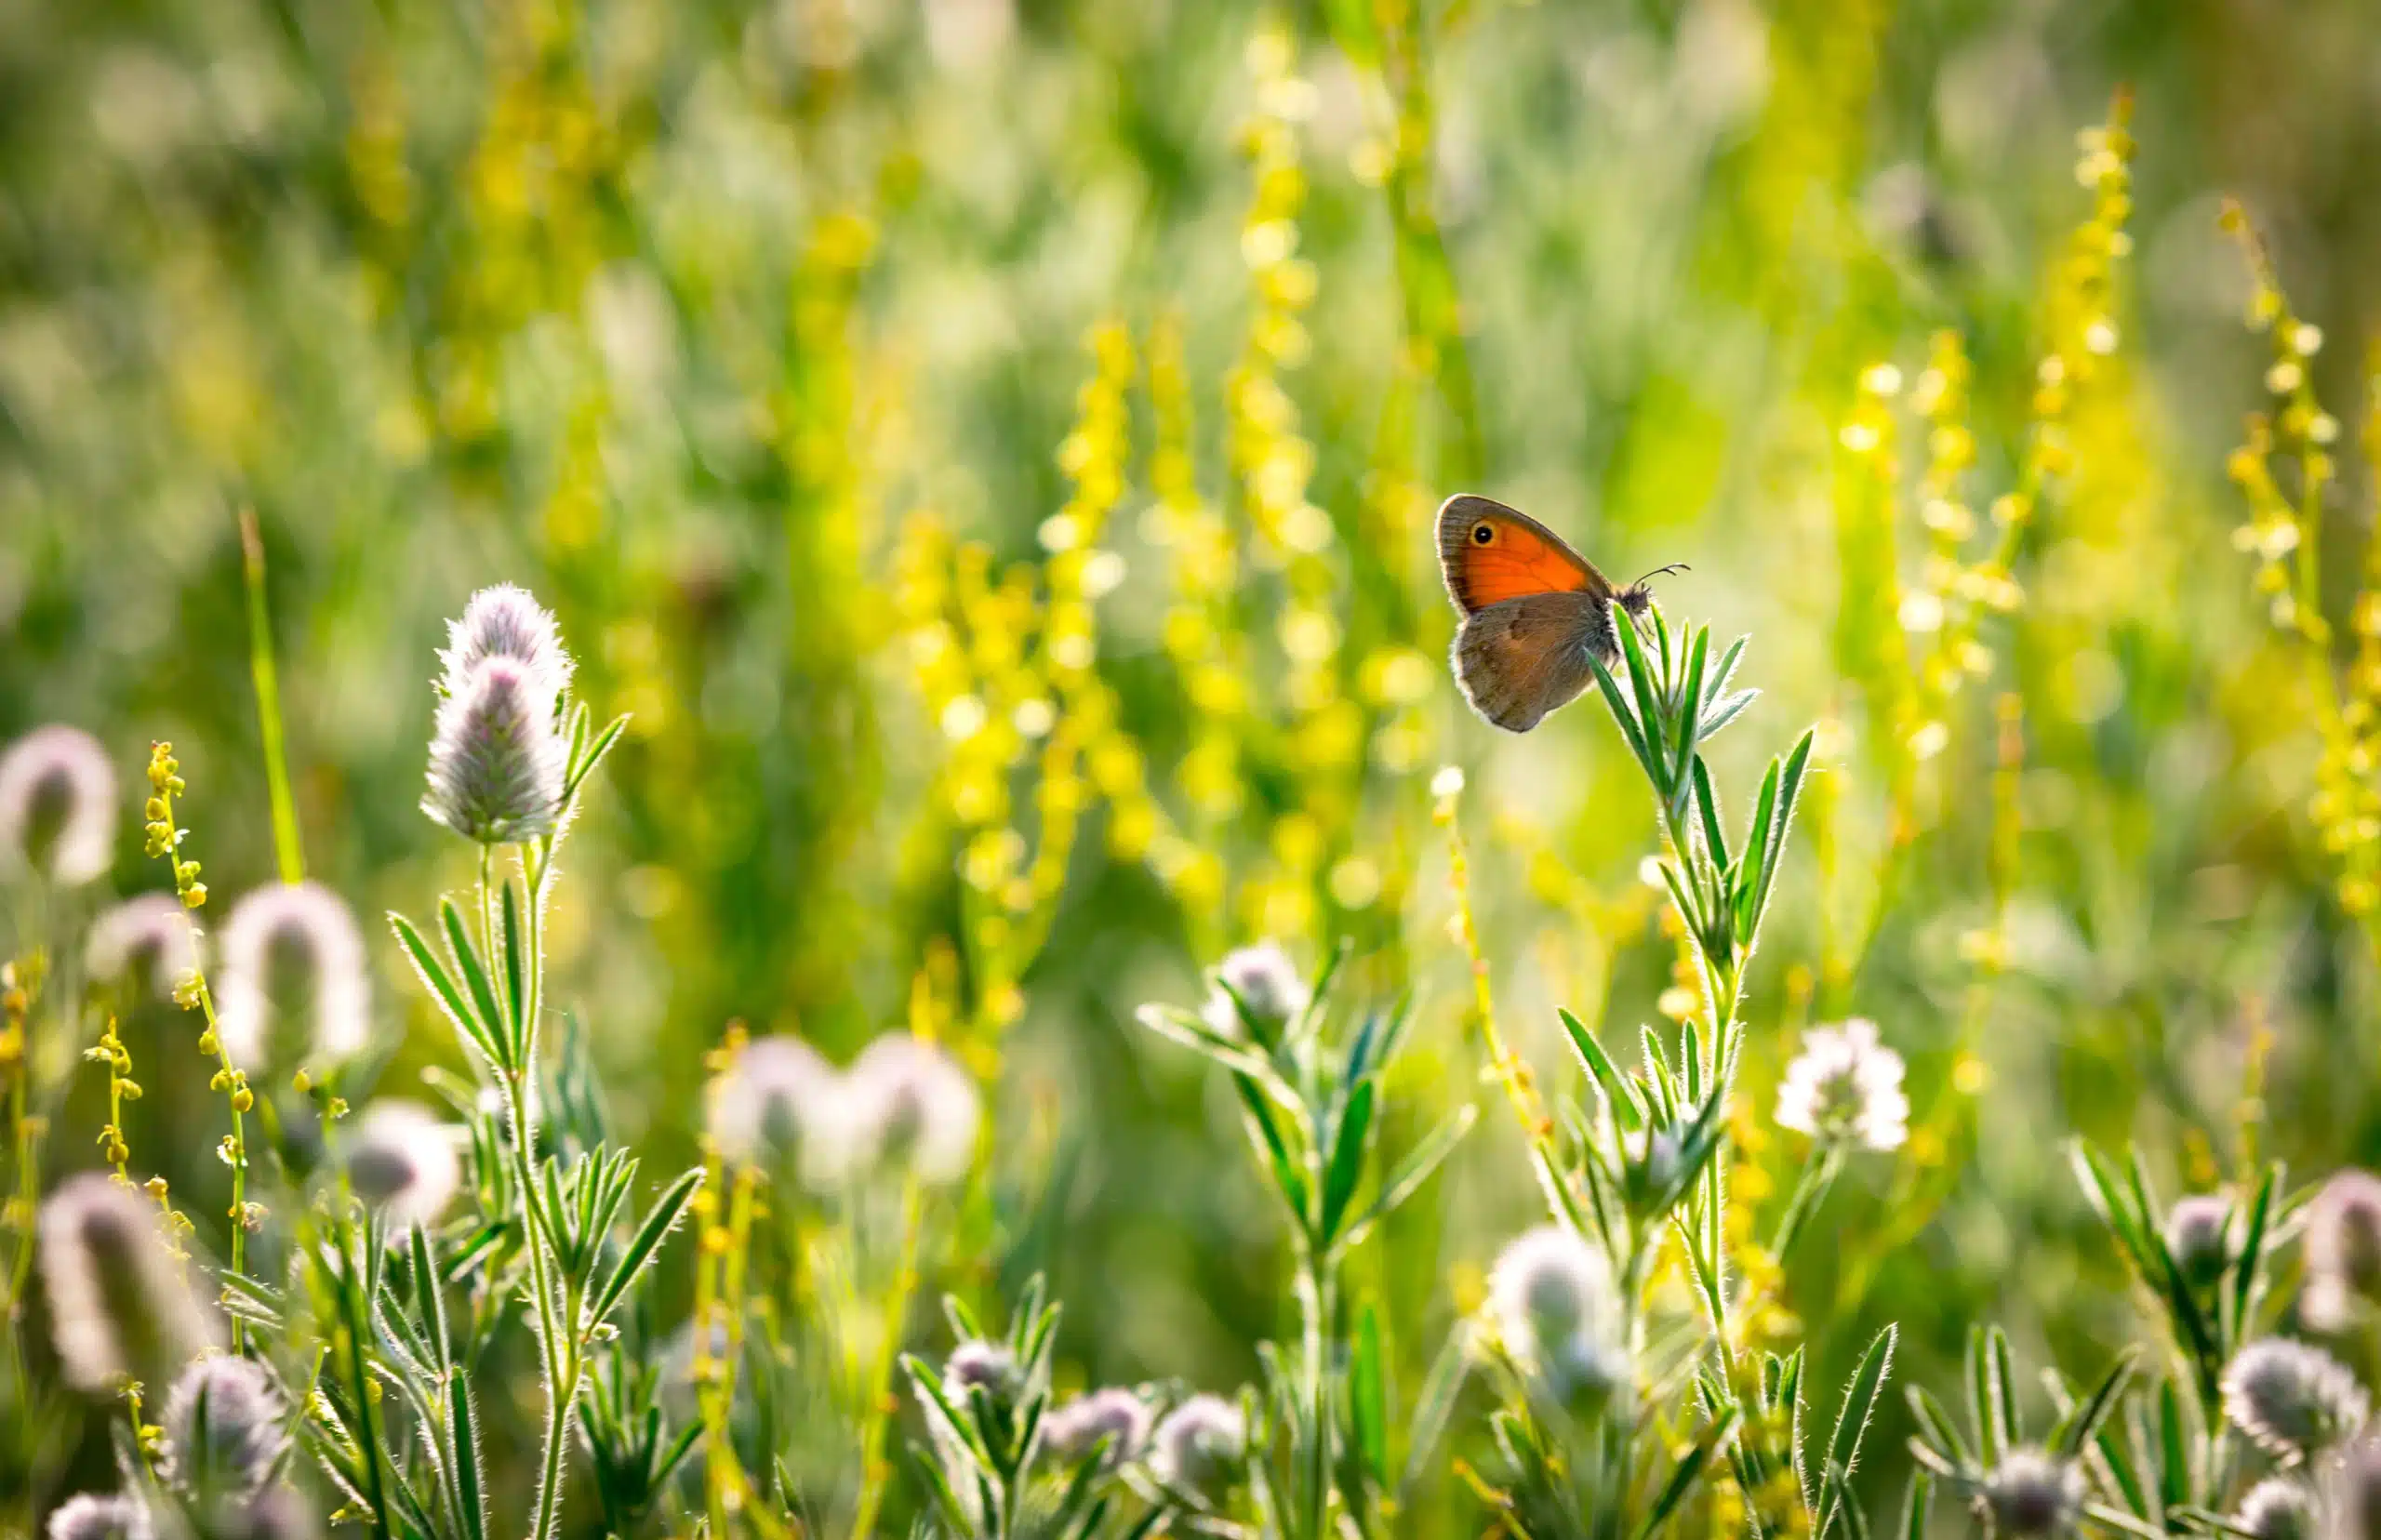 Butterfly on wild flower meadow.